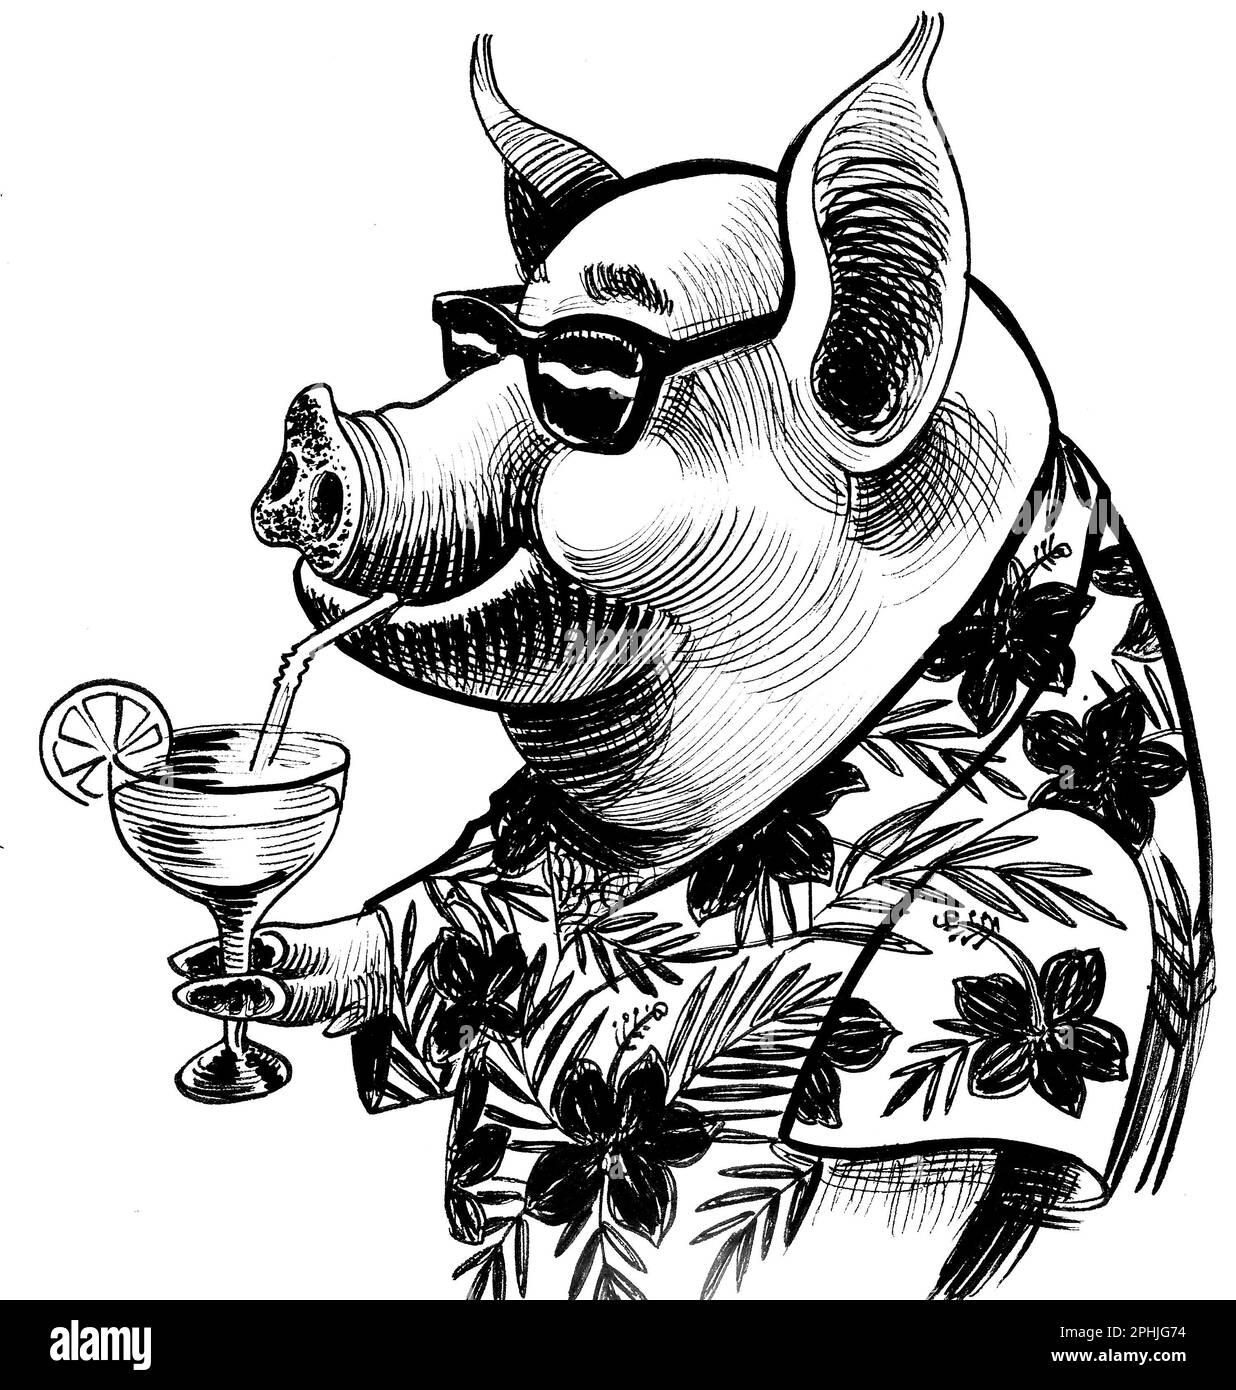 Cochon frais dans une chemise hawaïenne et des lunettes de soleil buvant un cocktail de Margarita. Dessin noir et blanc à l'encre dessinée à la main Banque D'Images